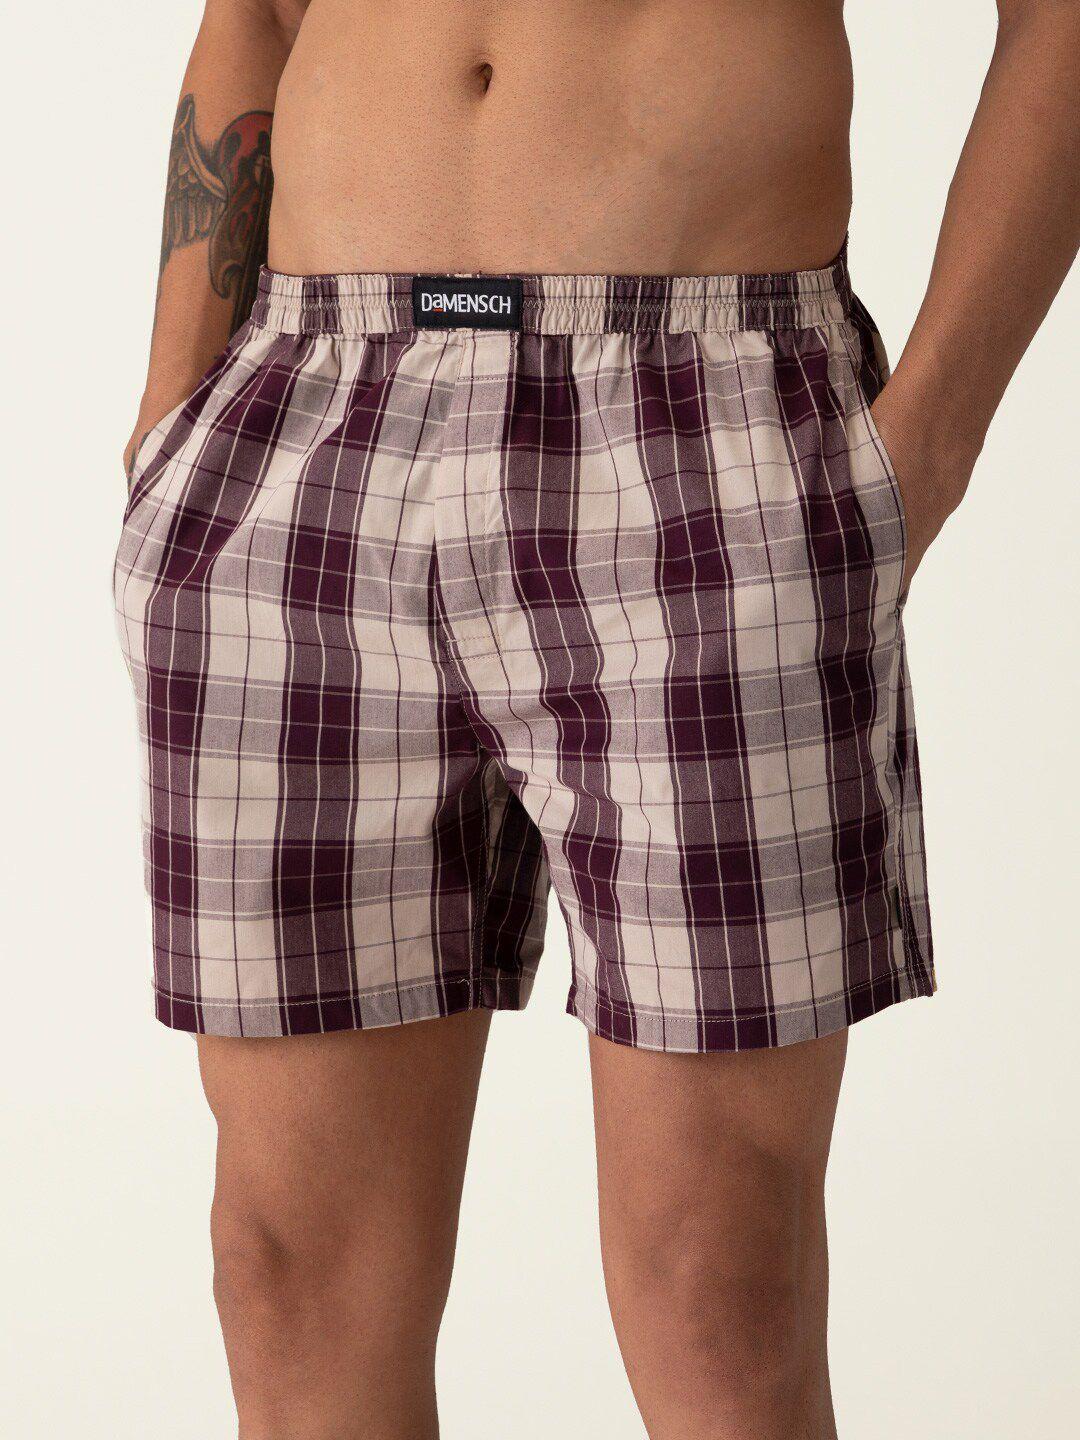 damensch men checkered ultra-light cotton regular fit boxer shorts